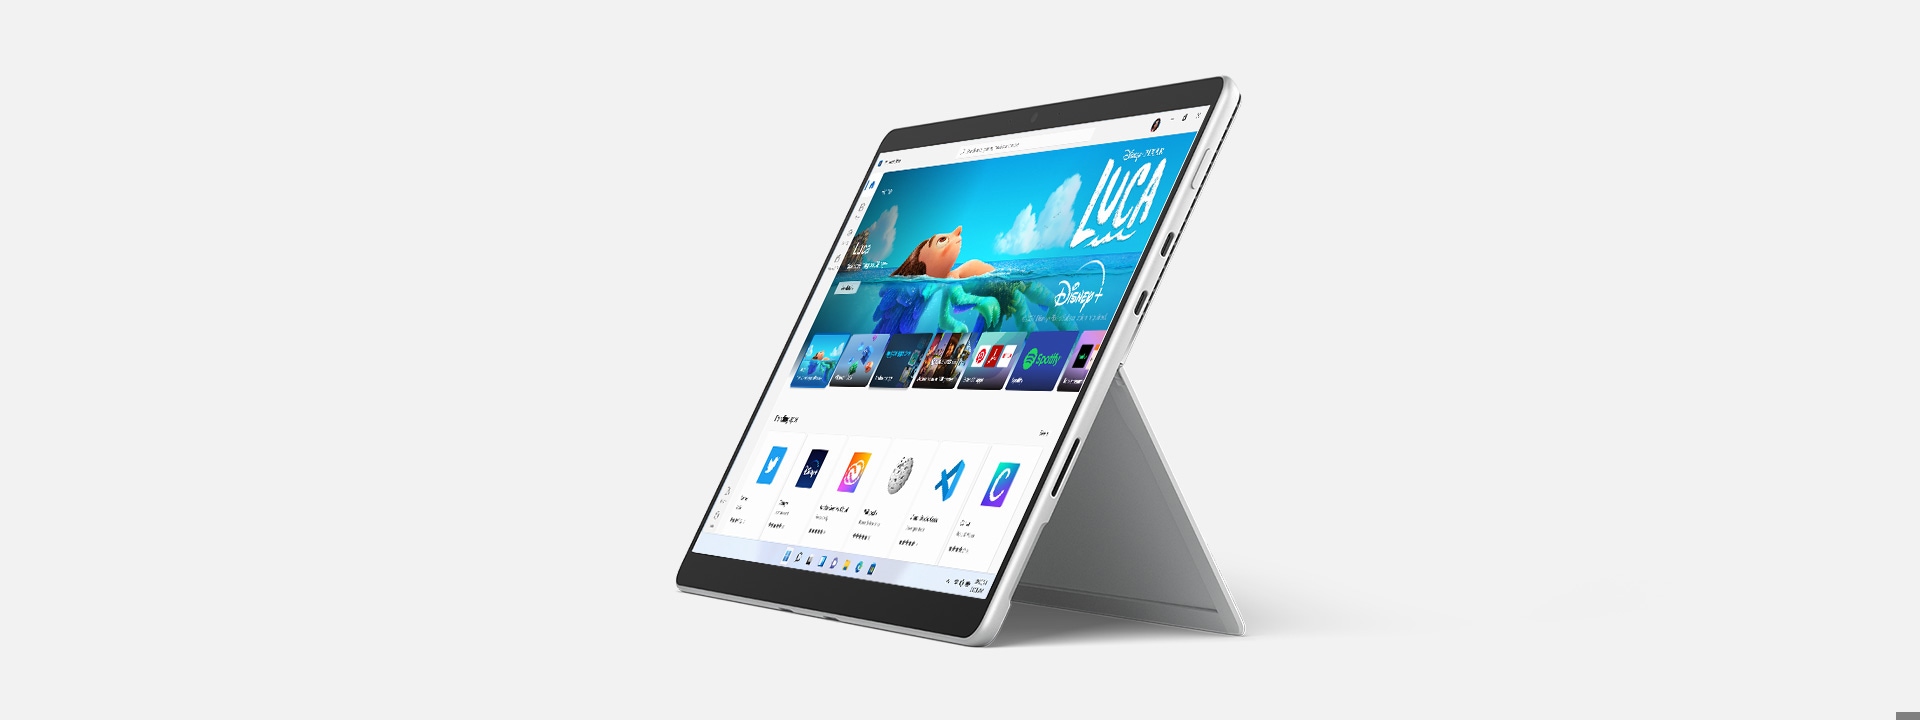 MSStore が表示されている、キックスタンド モードの Surface Pro 8。